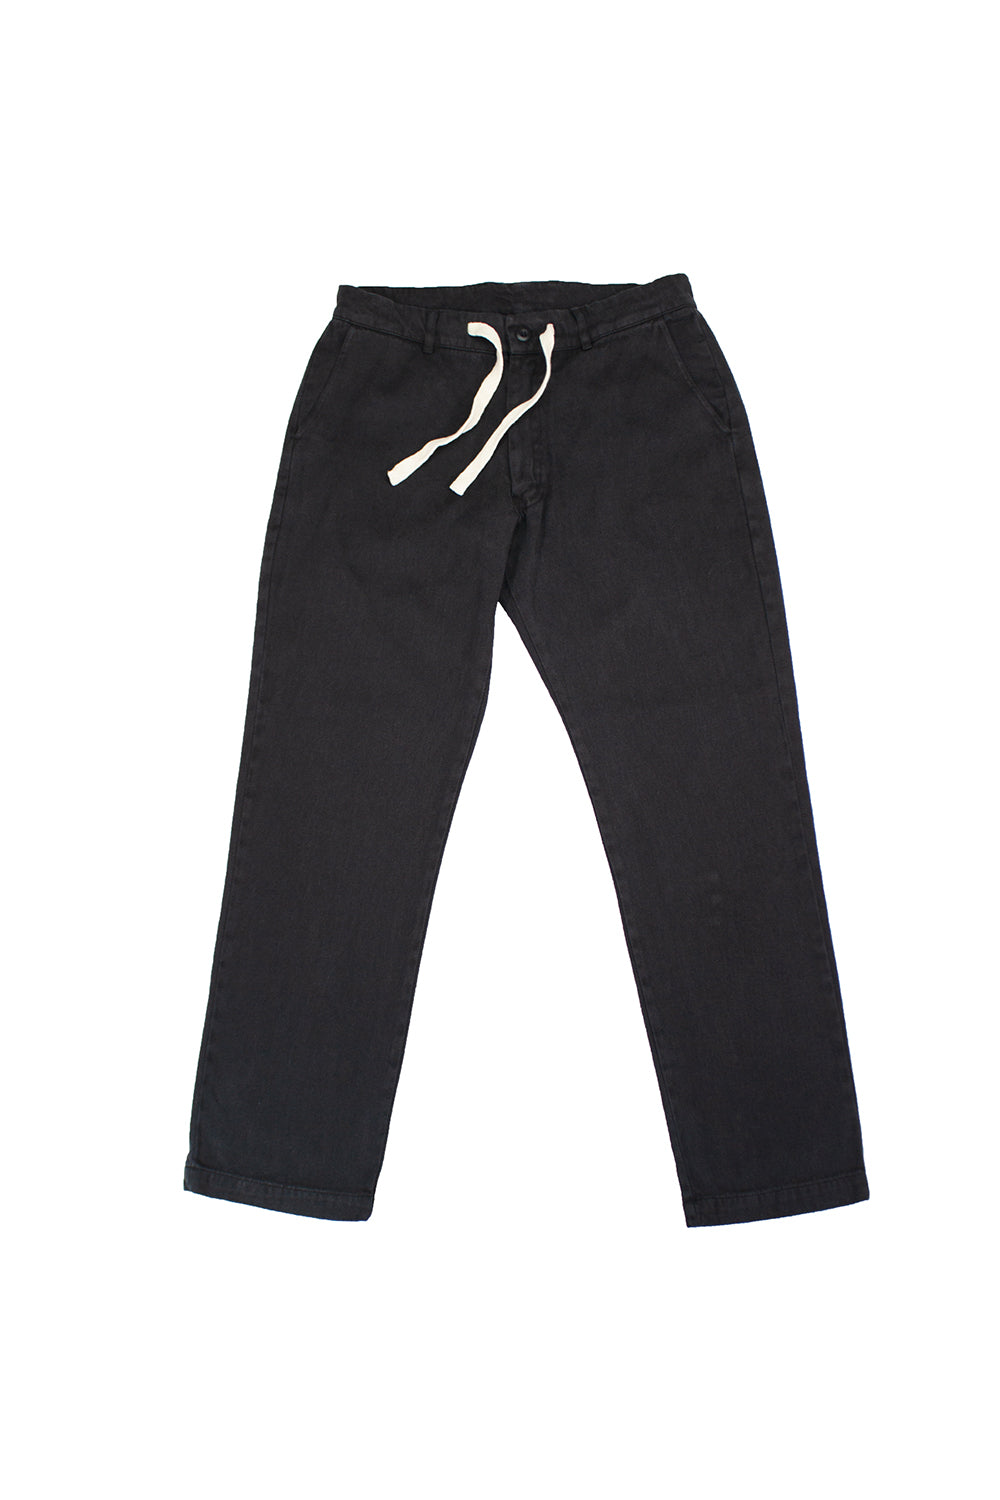 Pacific Coast Pant | Jungmaven Hemp Clothing & Accessories / Color: Black